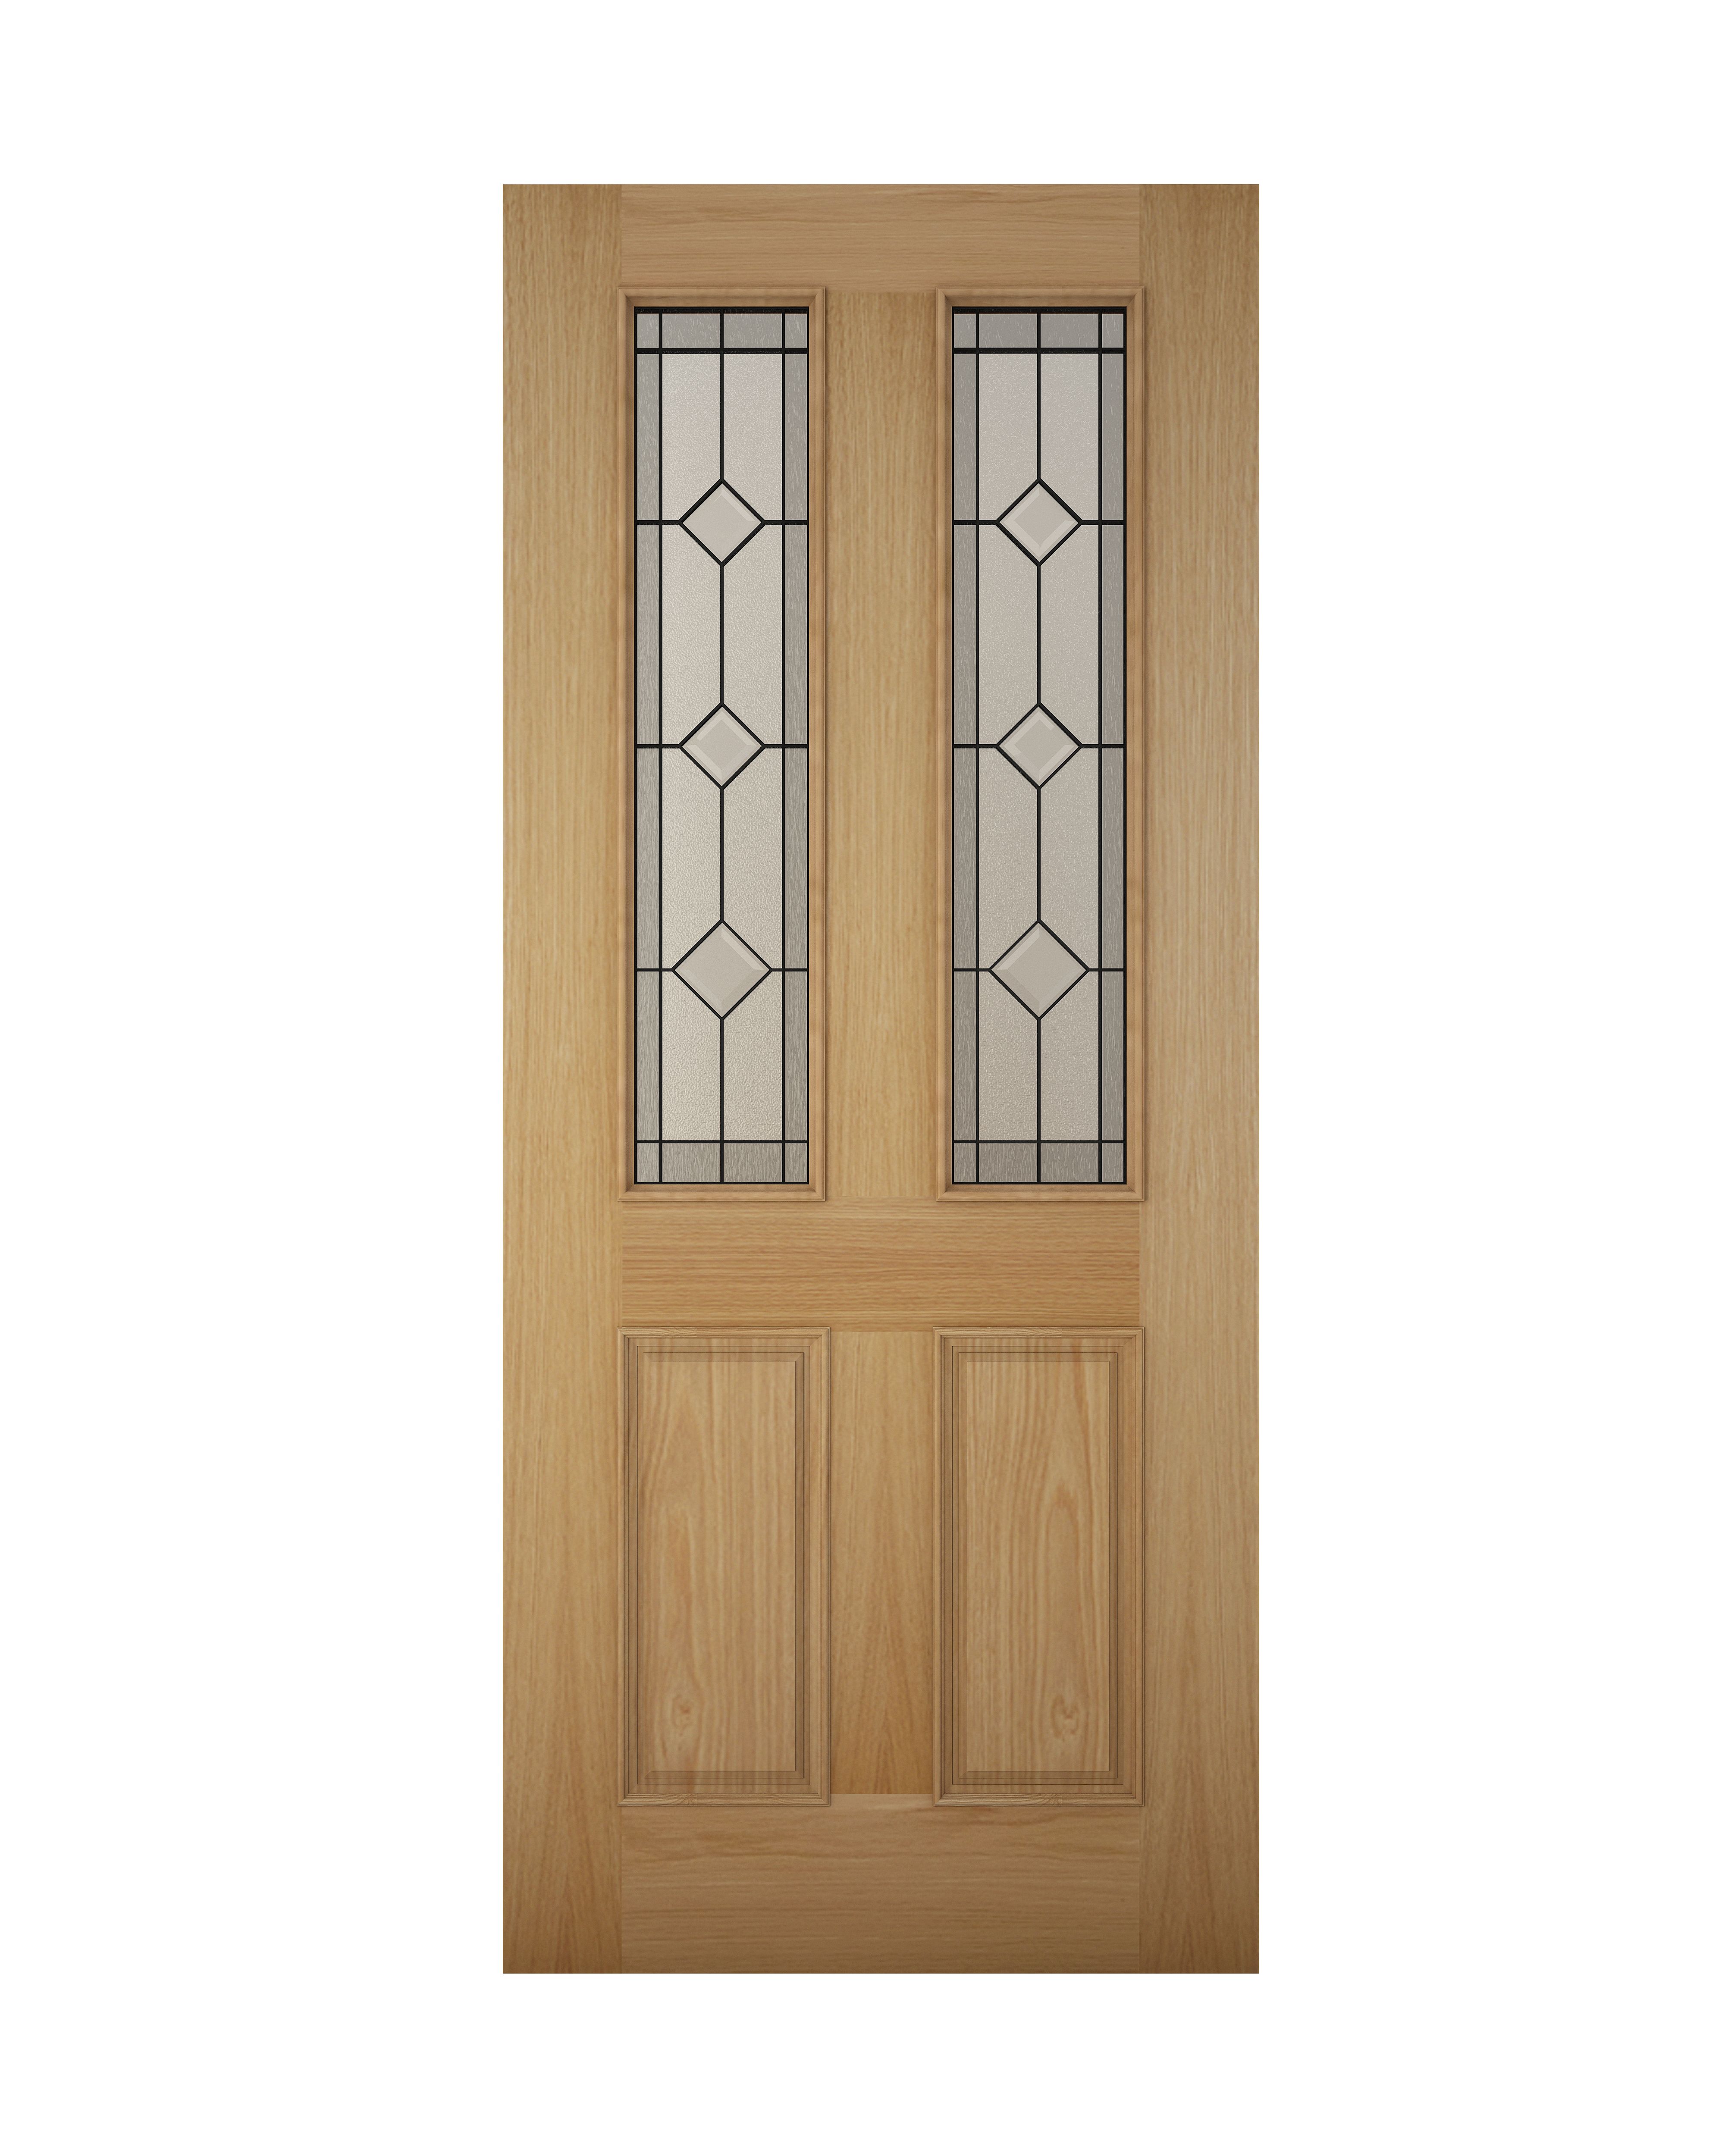 4 panel Diamond bevel Glazed Raised moulding White oak veneer Reversible External Front Door set & letter plate, (H)2074mm (W)932mm